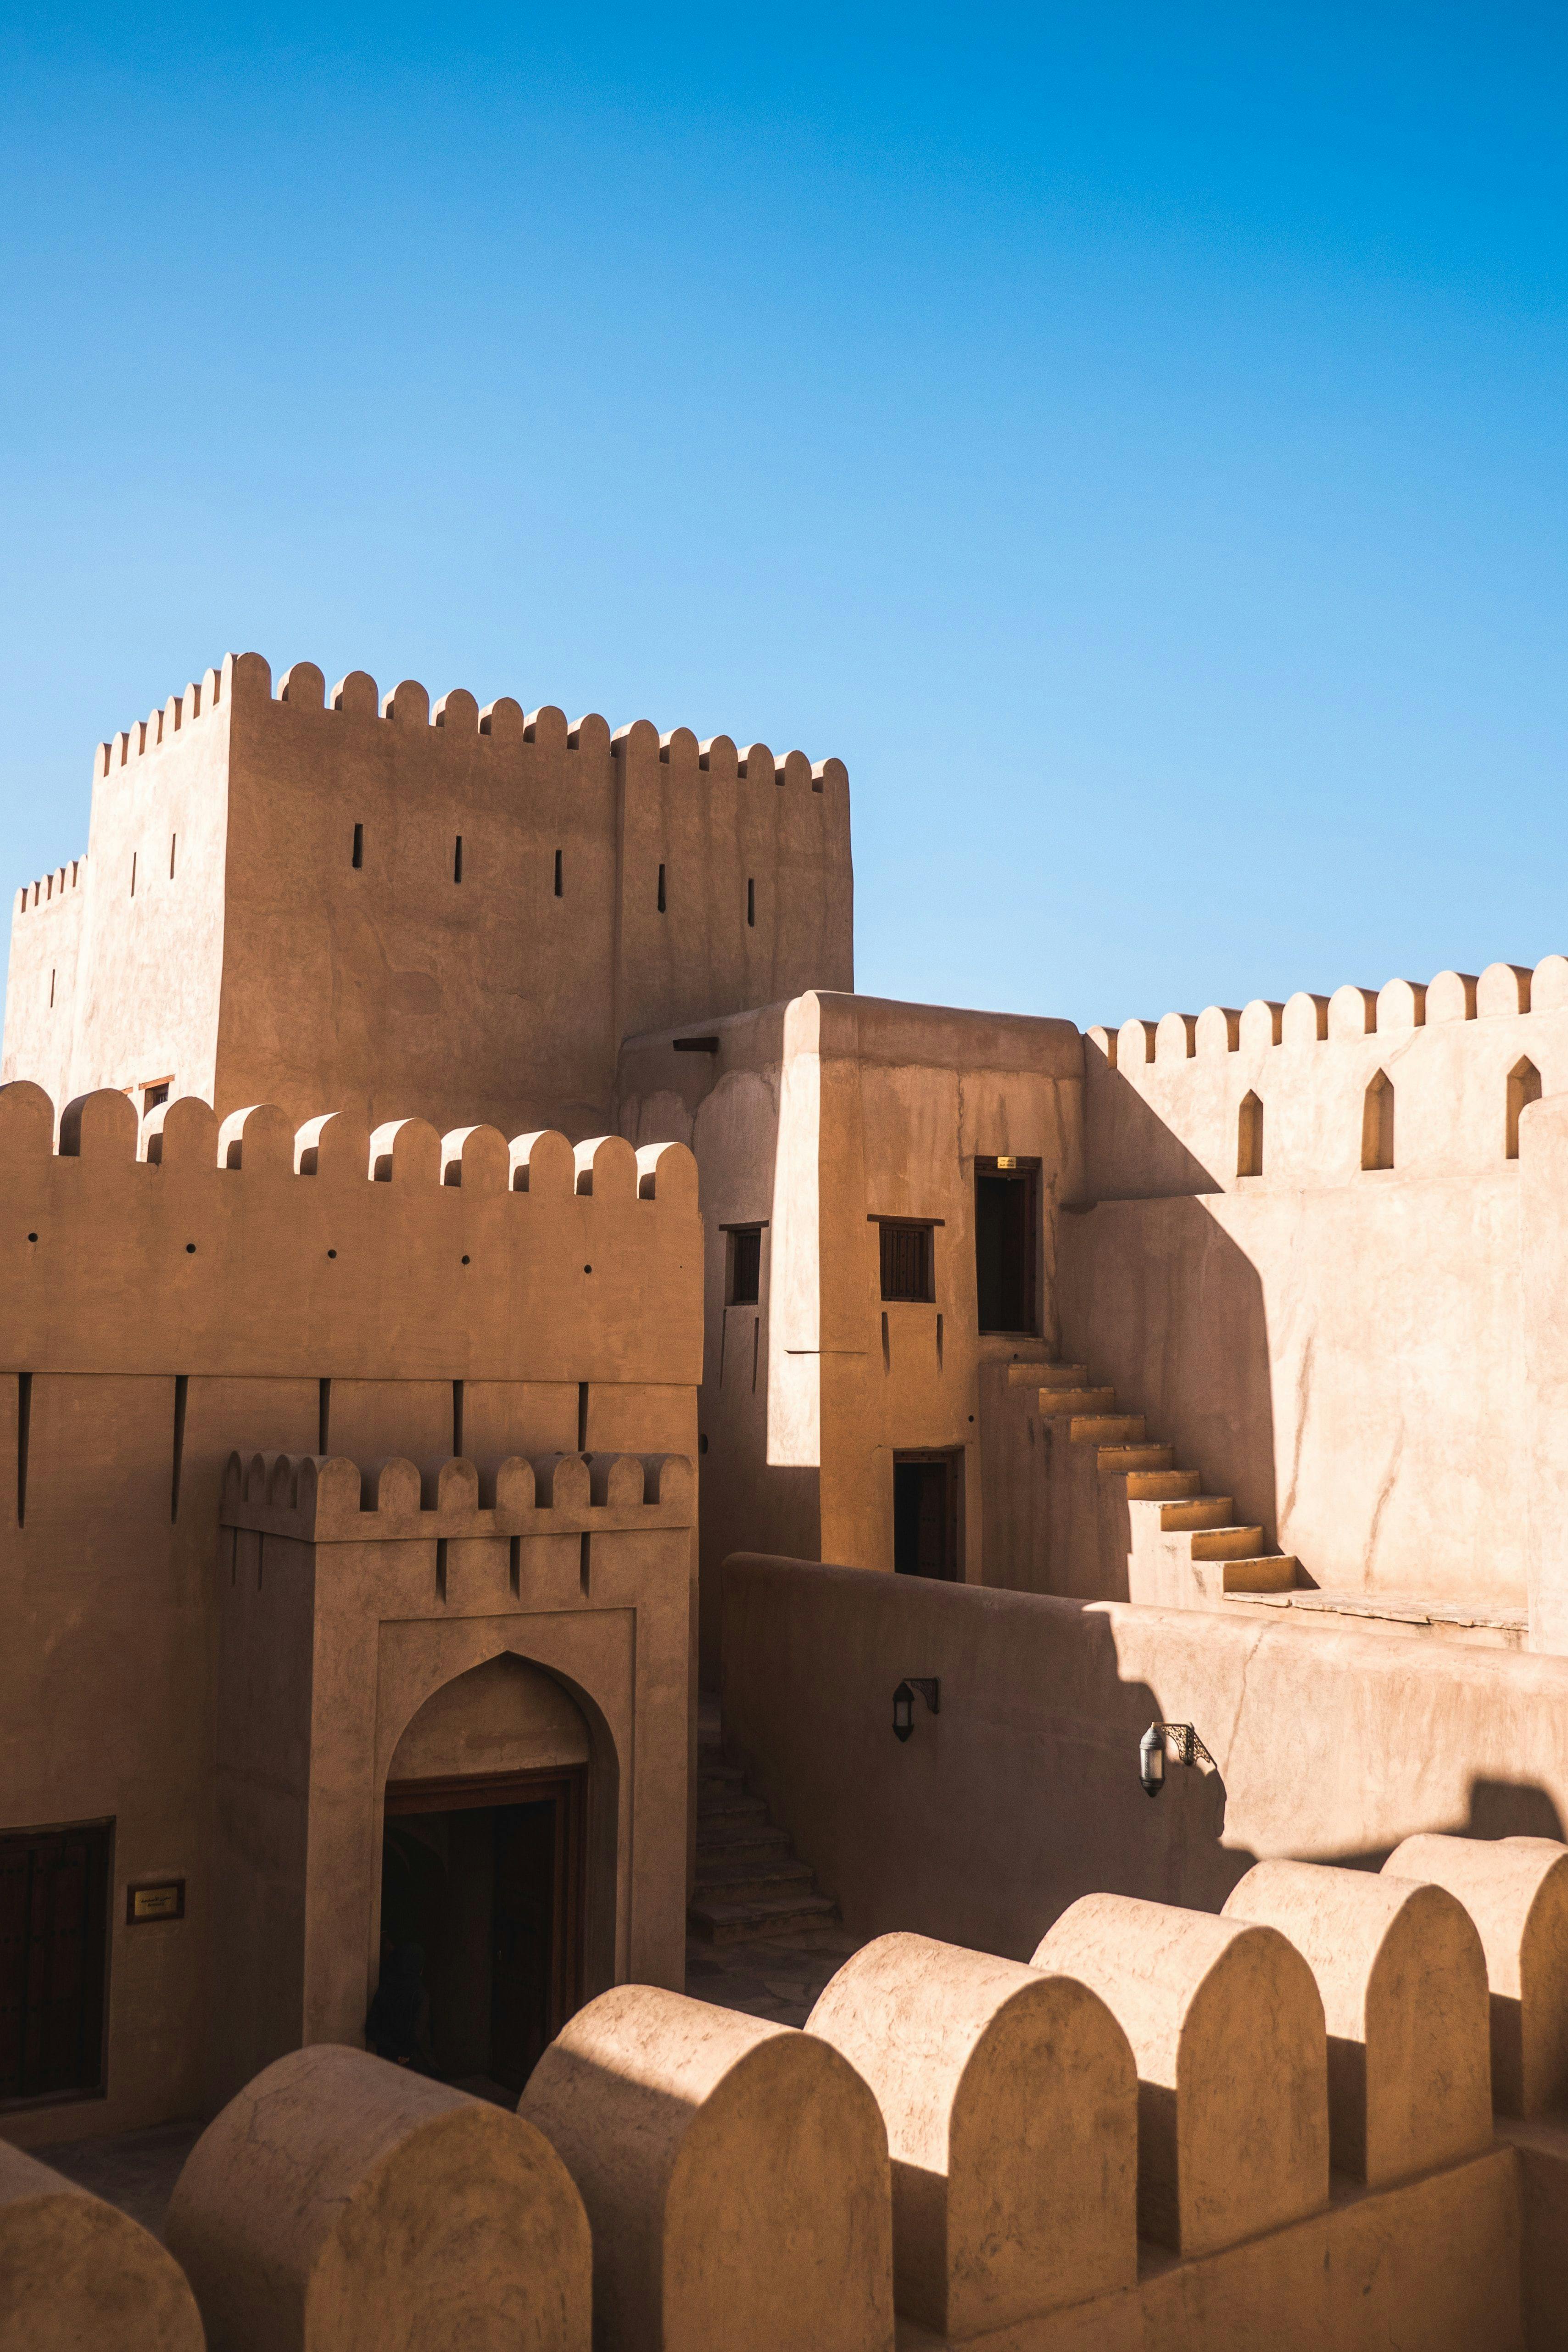 Nizwa fort in Oman.